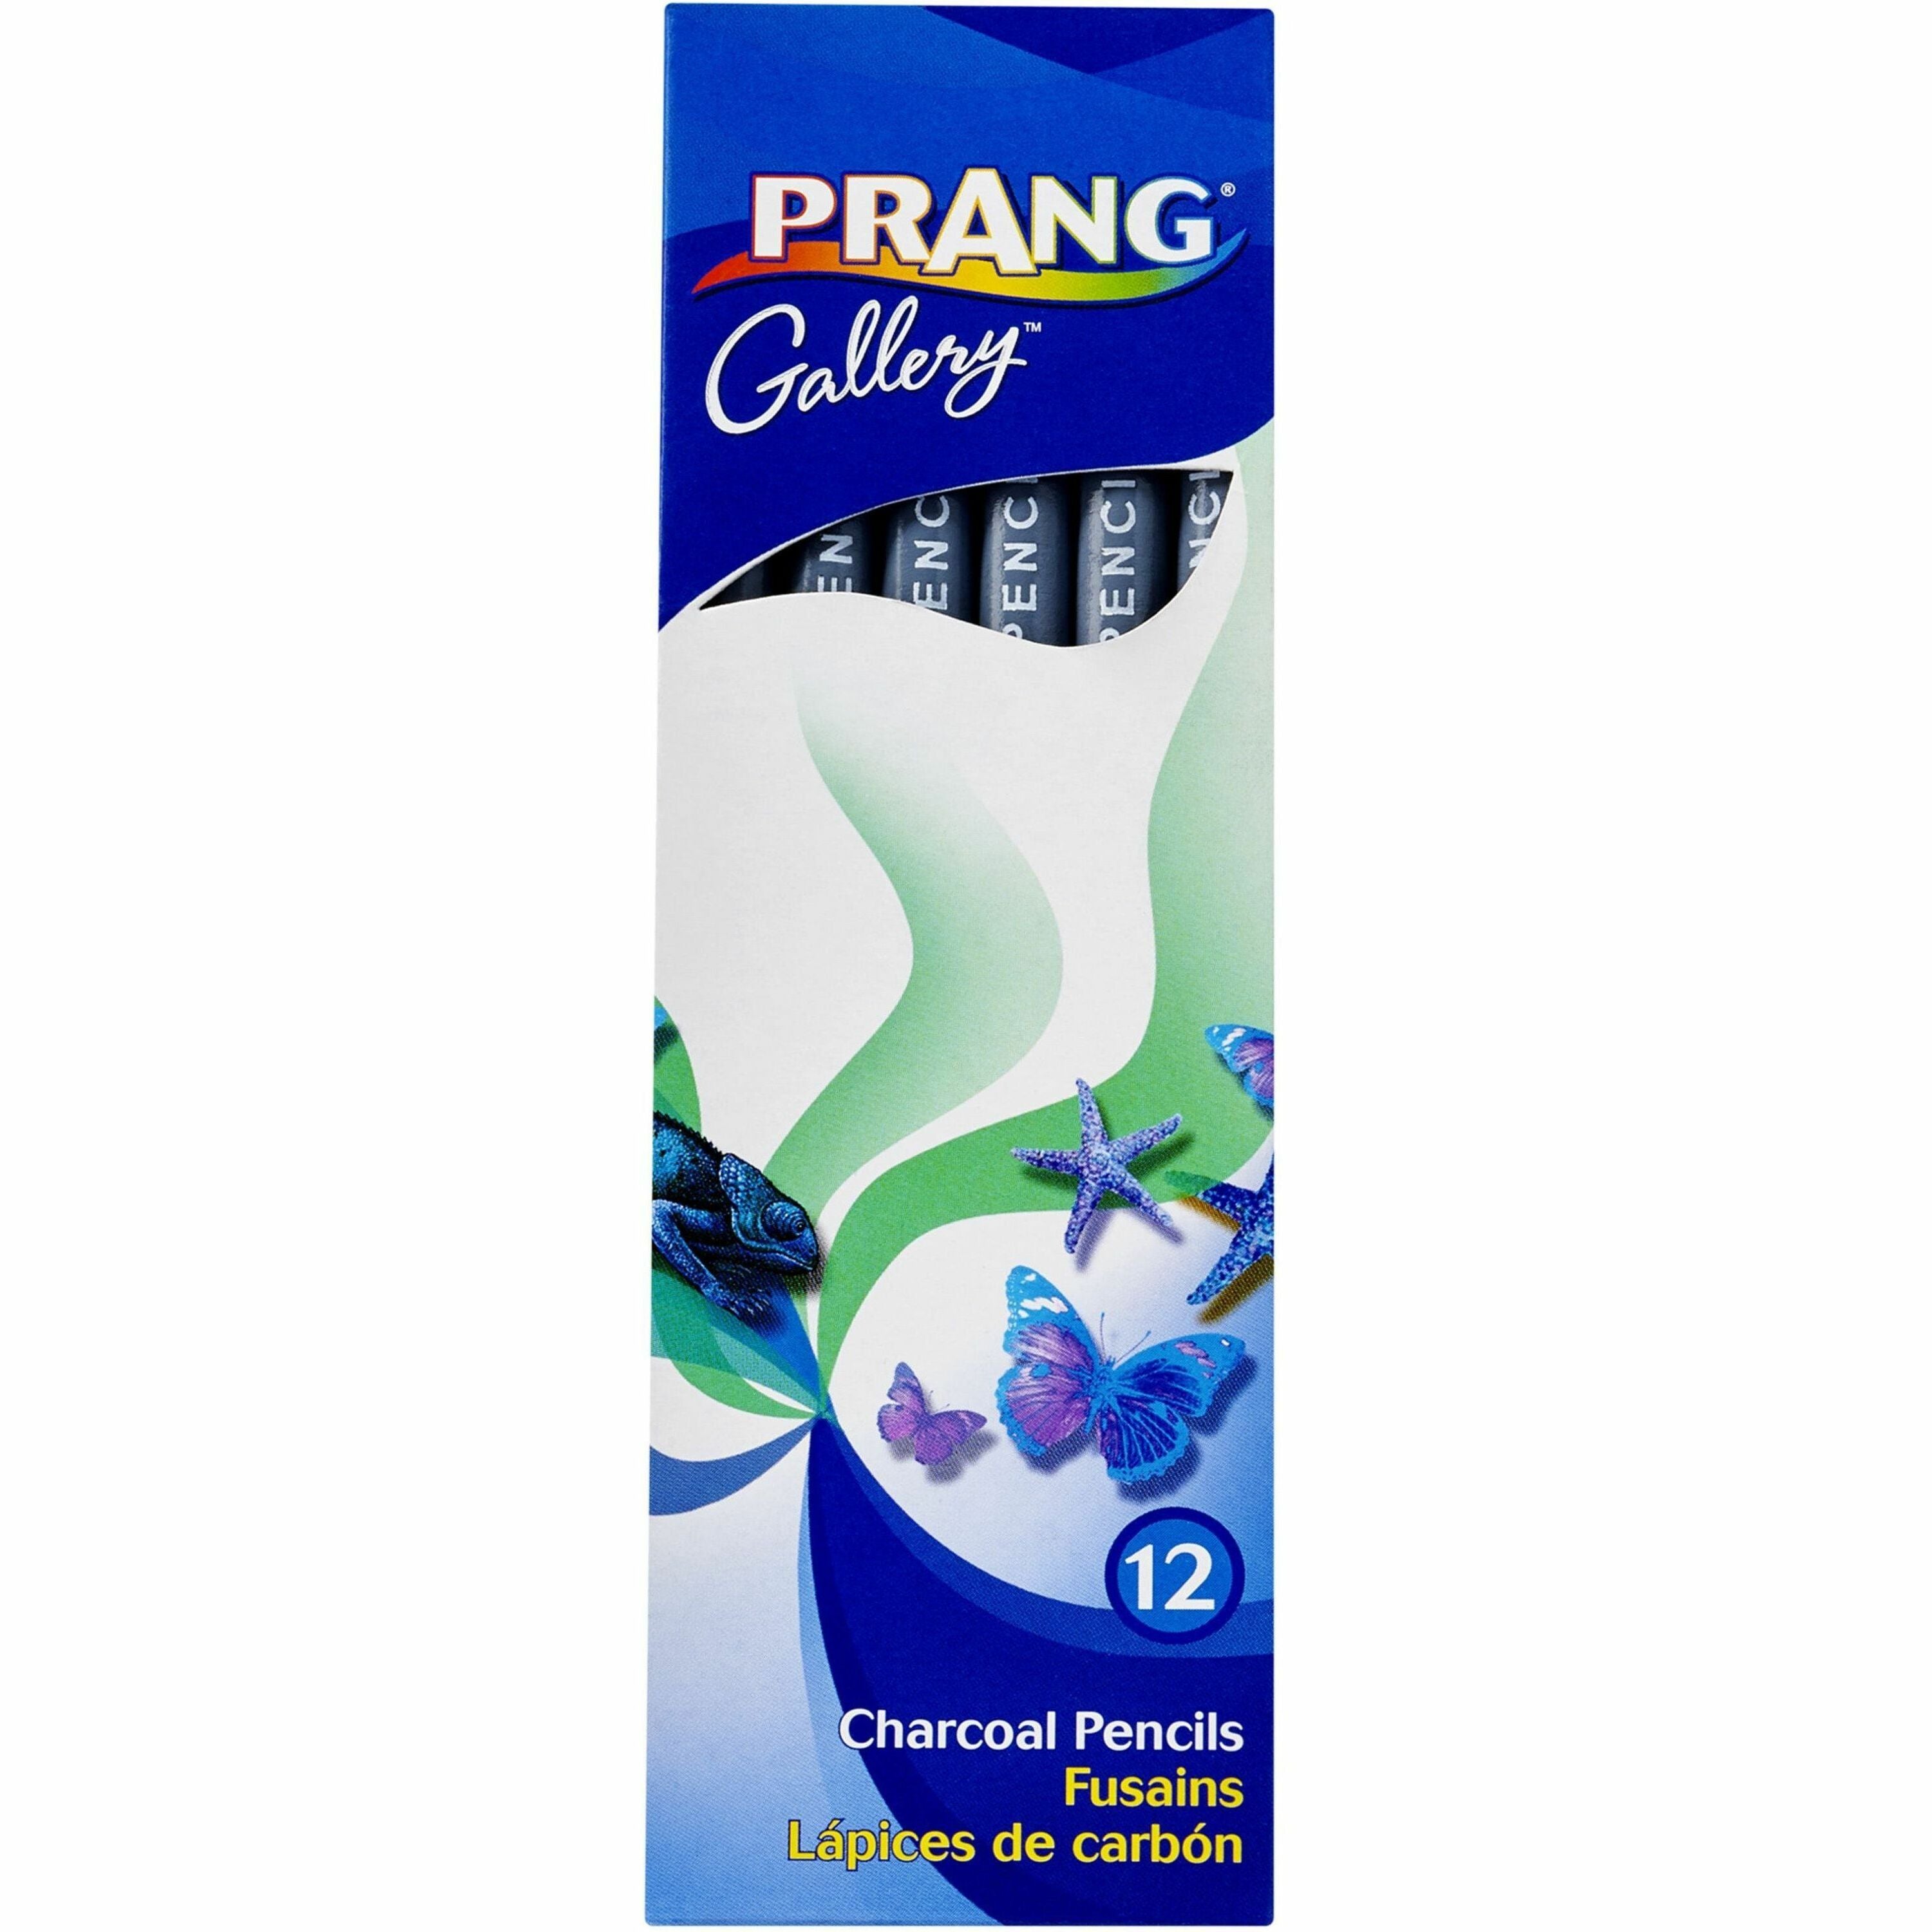 prang-charcoal-pencils-black-lead-12-pack_dixx60100 - 1